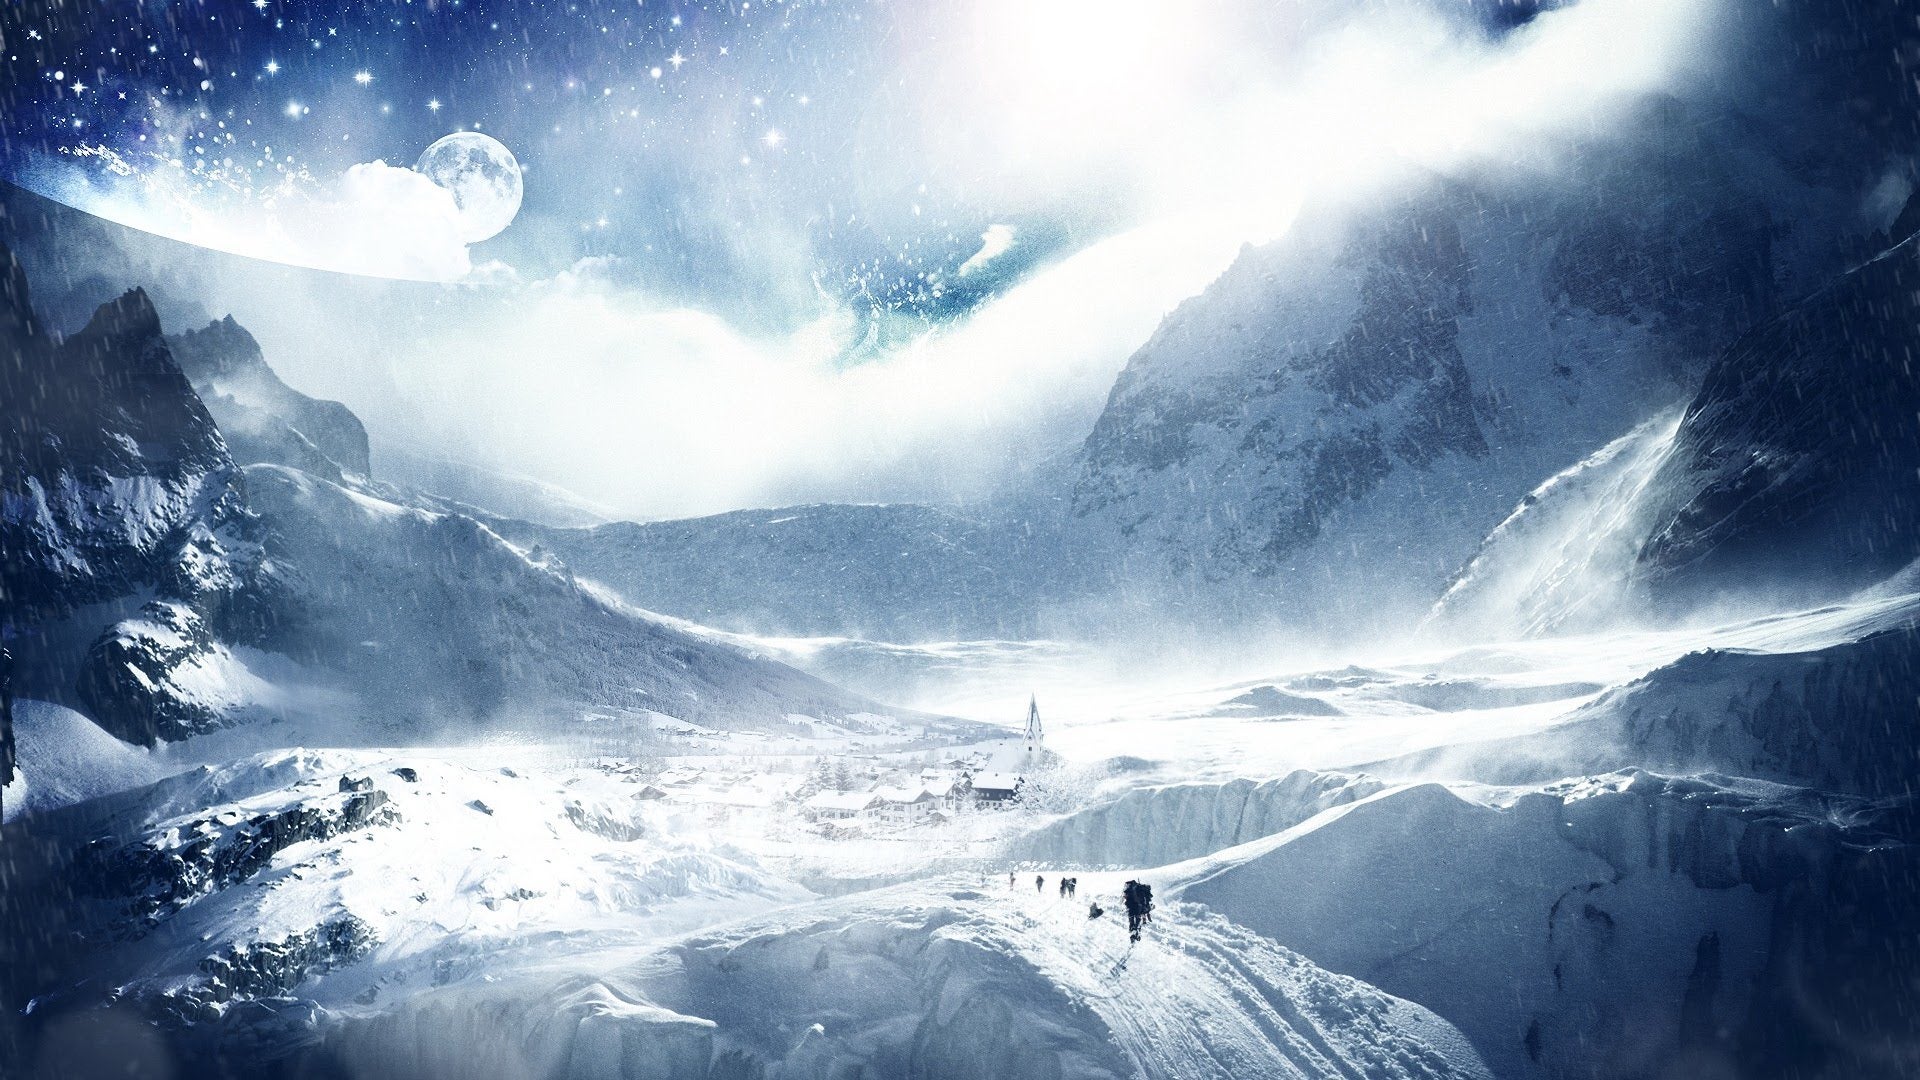 Αυτή είναι η φωτογραφία του χιονισμένου Παρθενώνα που κάνει το γύρο του κόσμου – Δείτε την